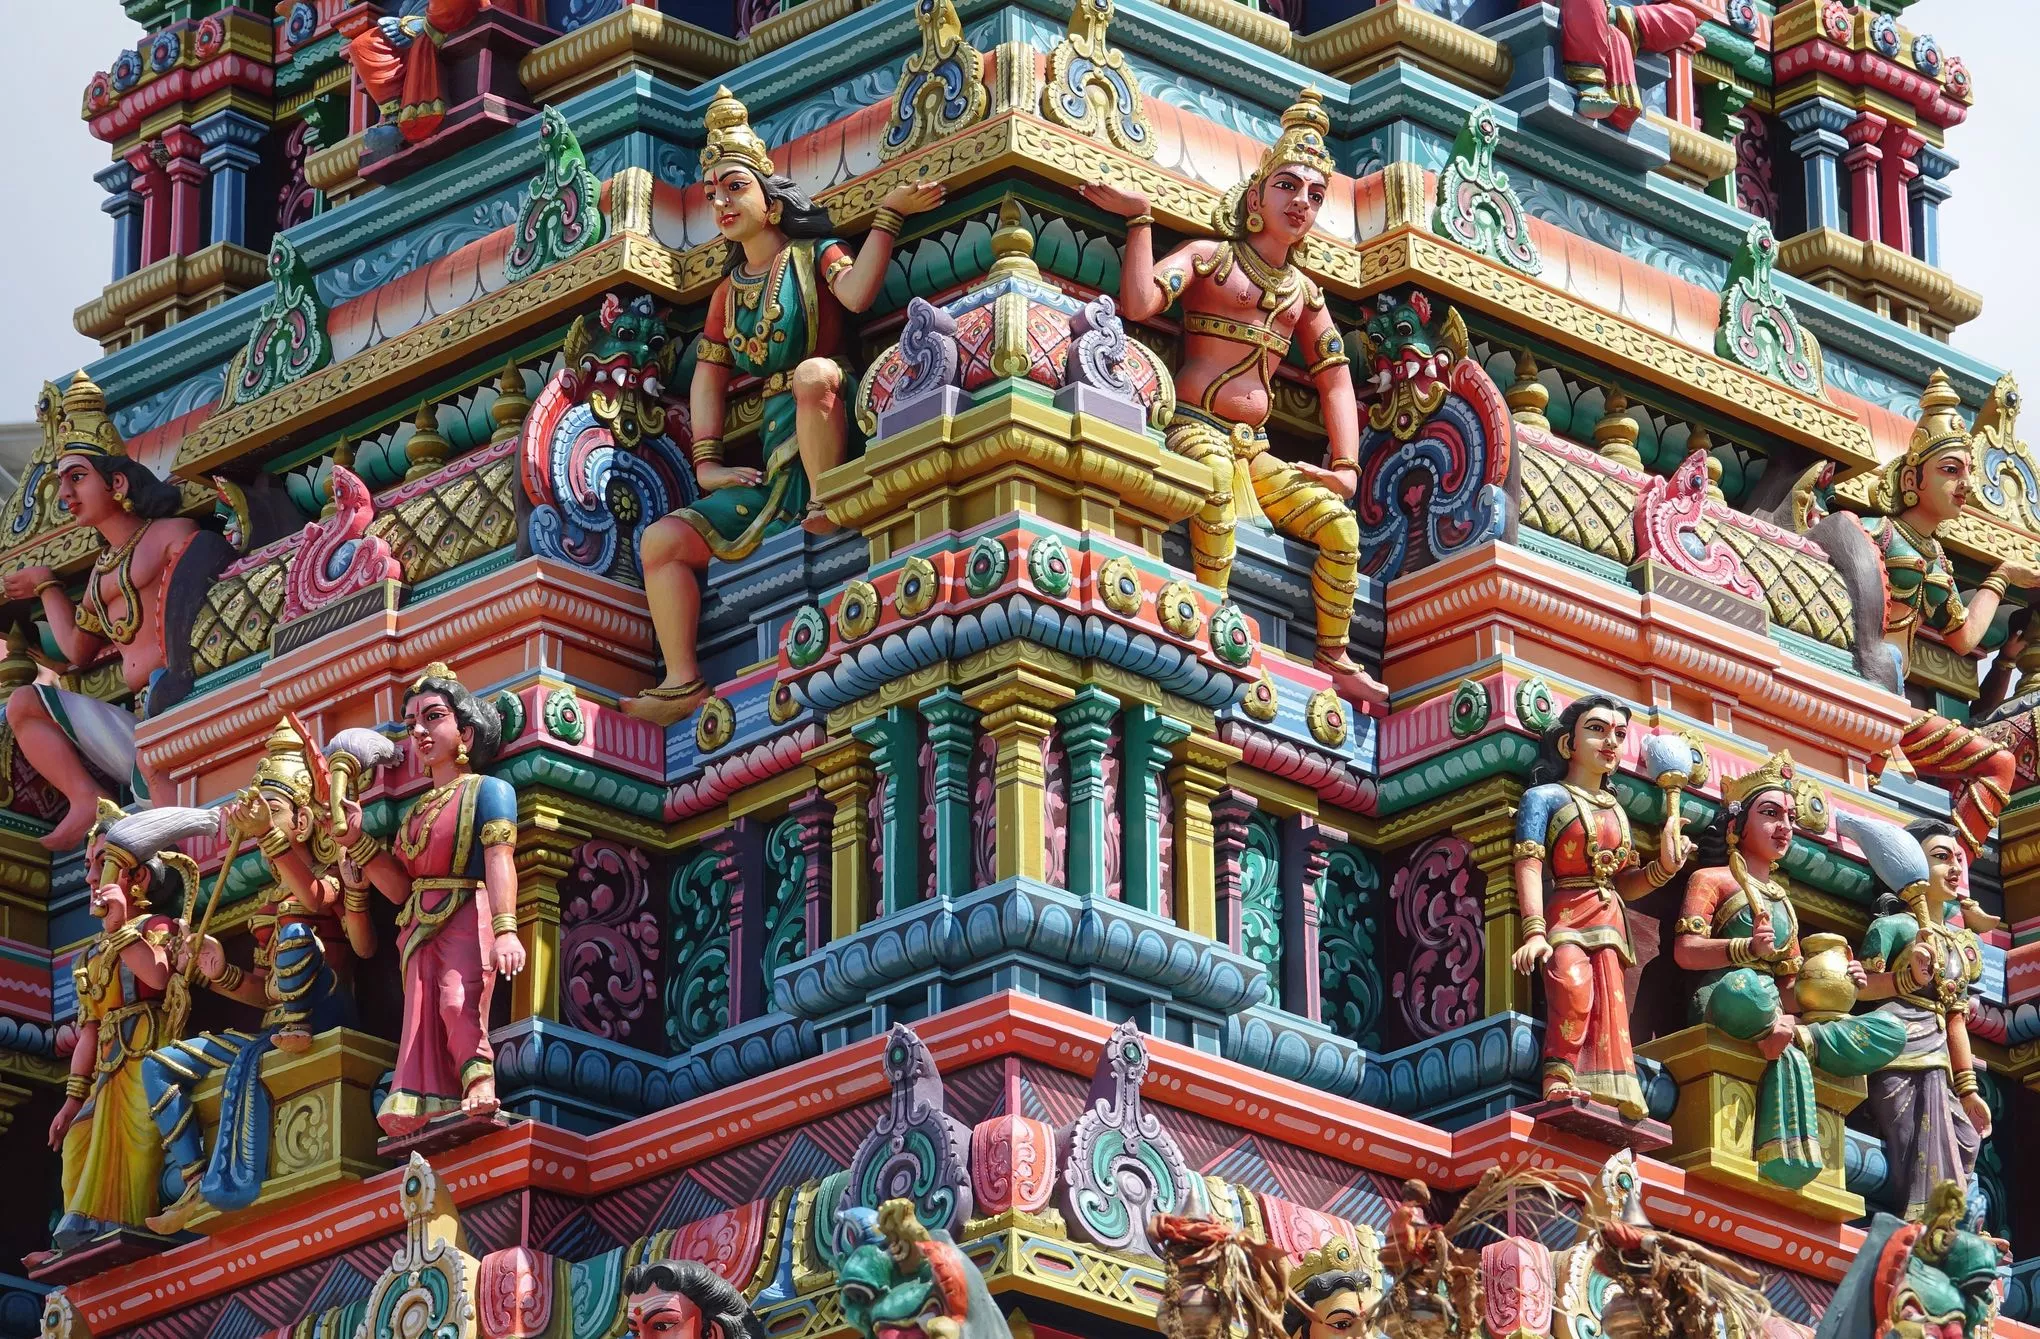 Dieser farbenprächtige hinduistische Tempel steht in der Kleinstadt Goodlands